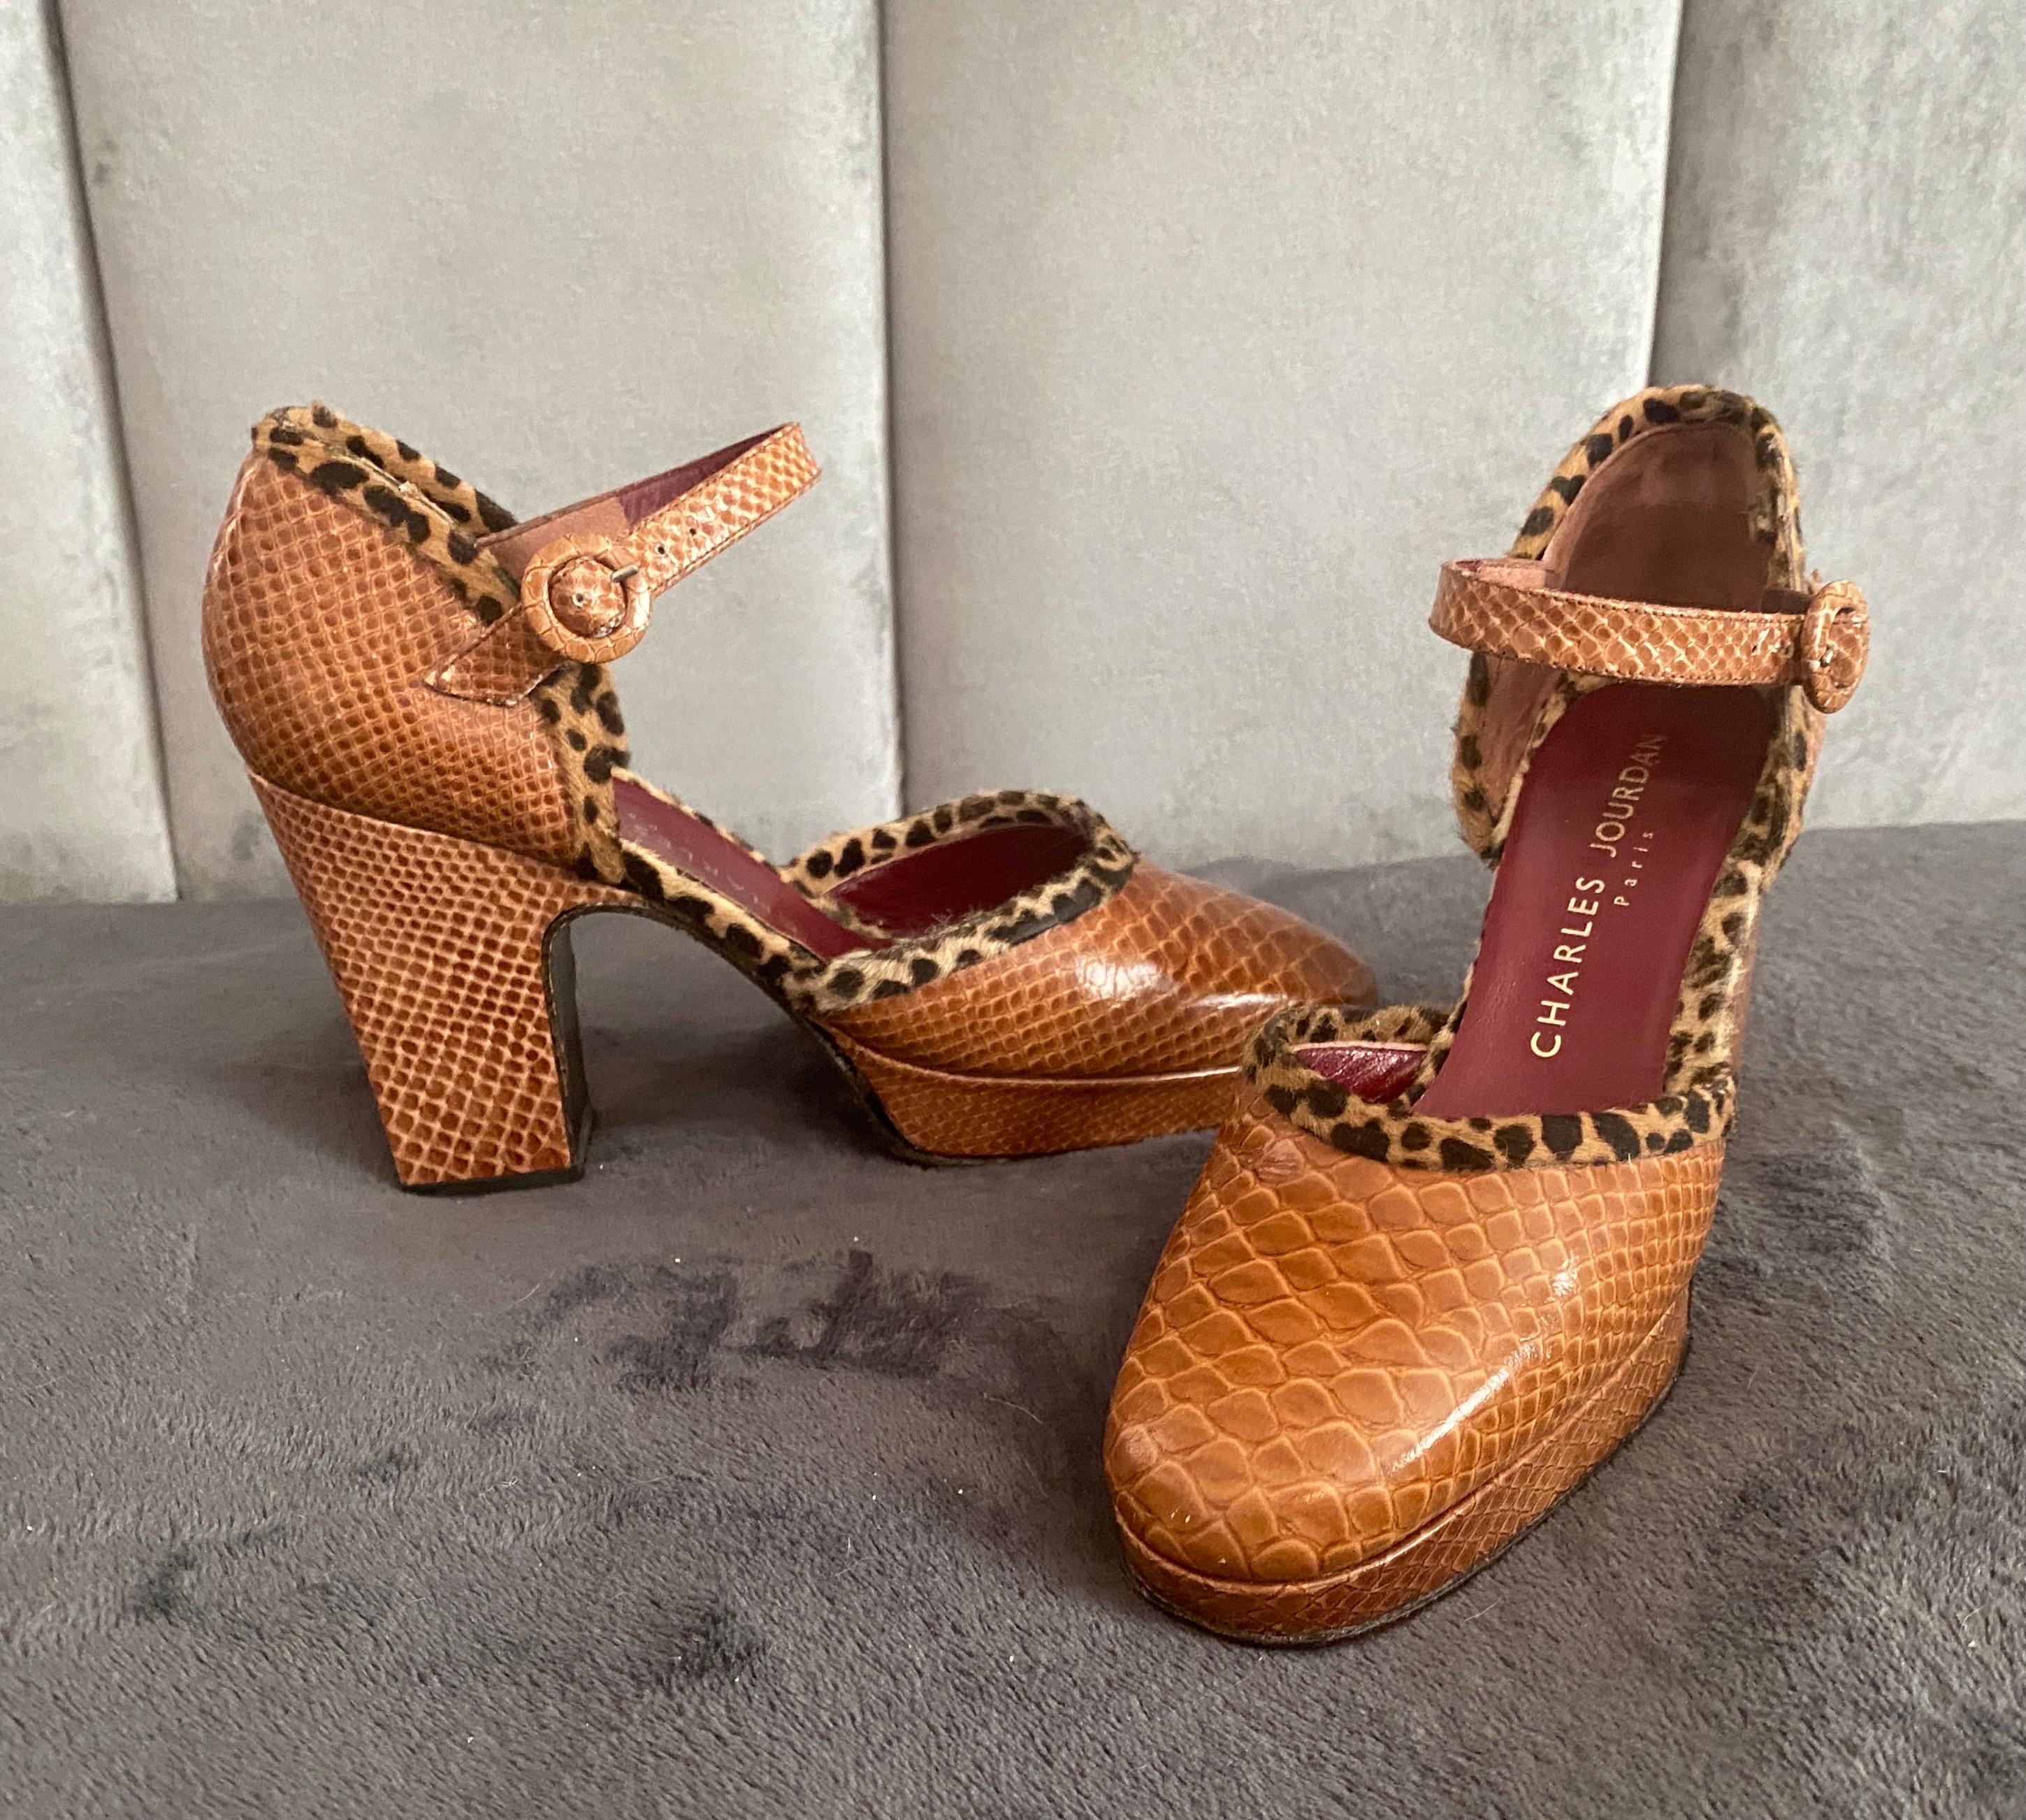 Une superbe paire de chaussures vintage Charles Jourdan, Paris. Le corps de la chaussure est en cuir imprimé serpent gaufré. La garniture est, je crois, en peau de vache imprimée pour ressembler à du léopard. Ces chaussures sont sexy ! L'état de ces